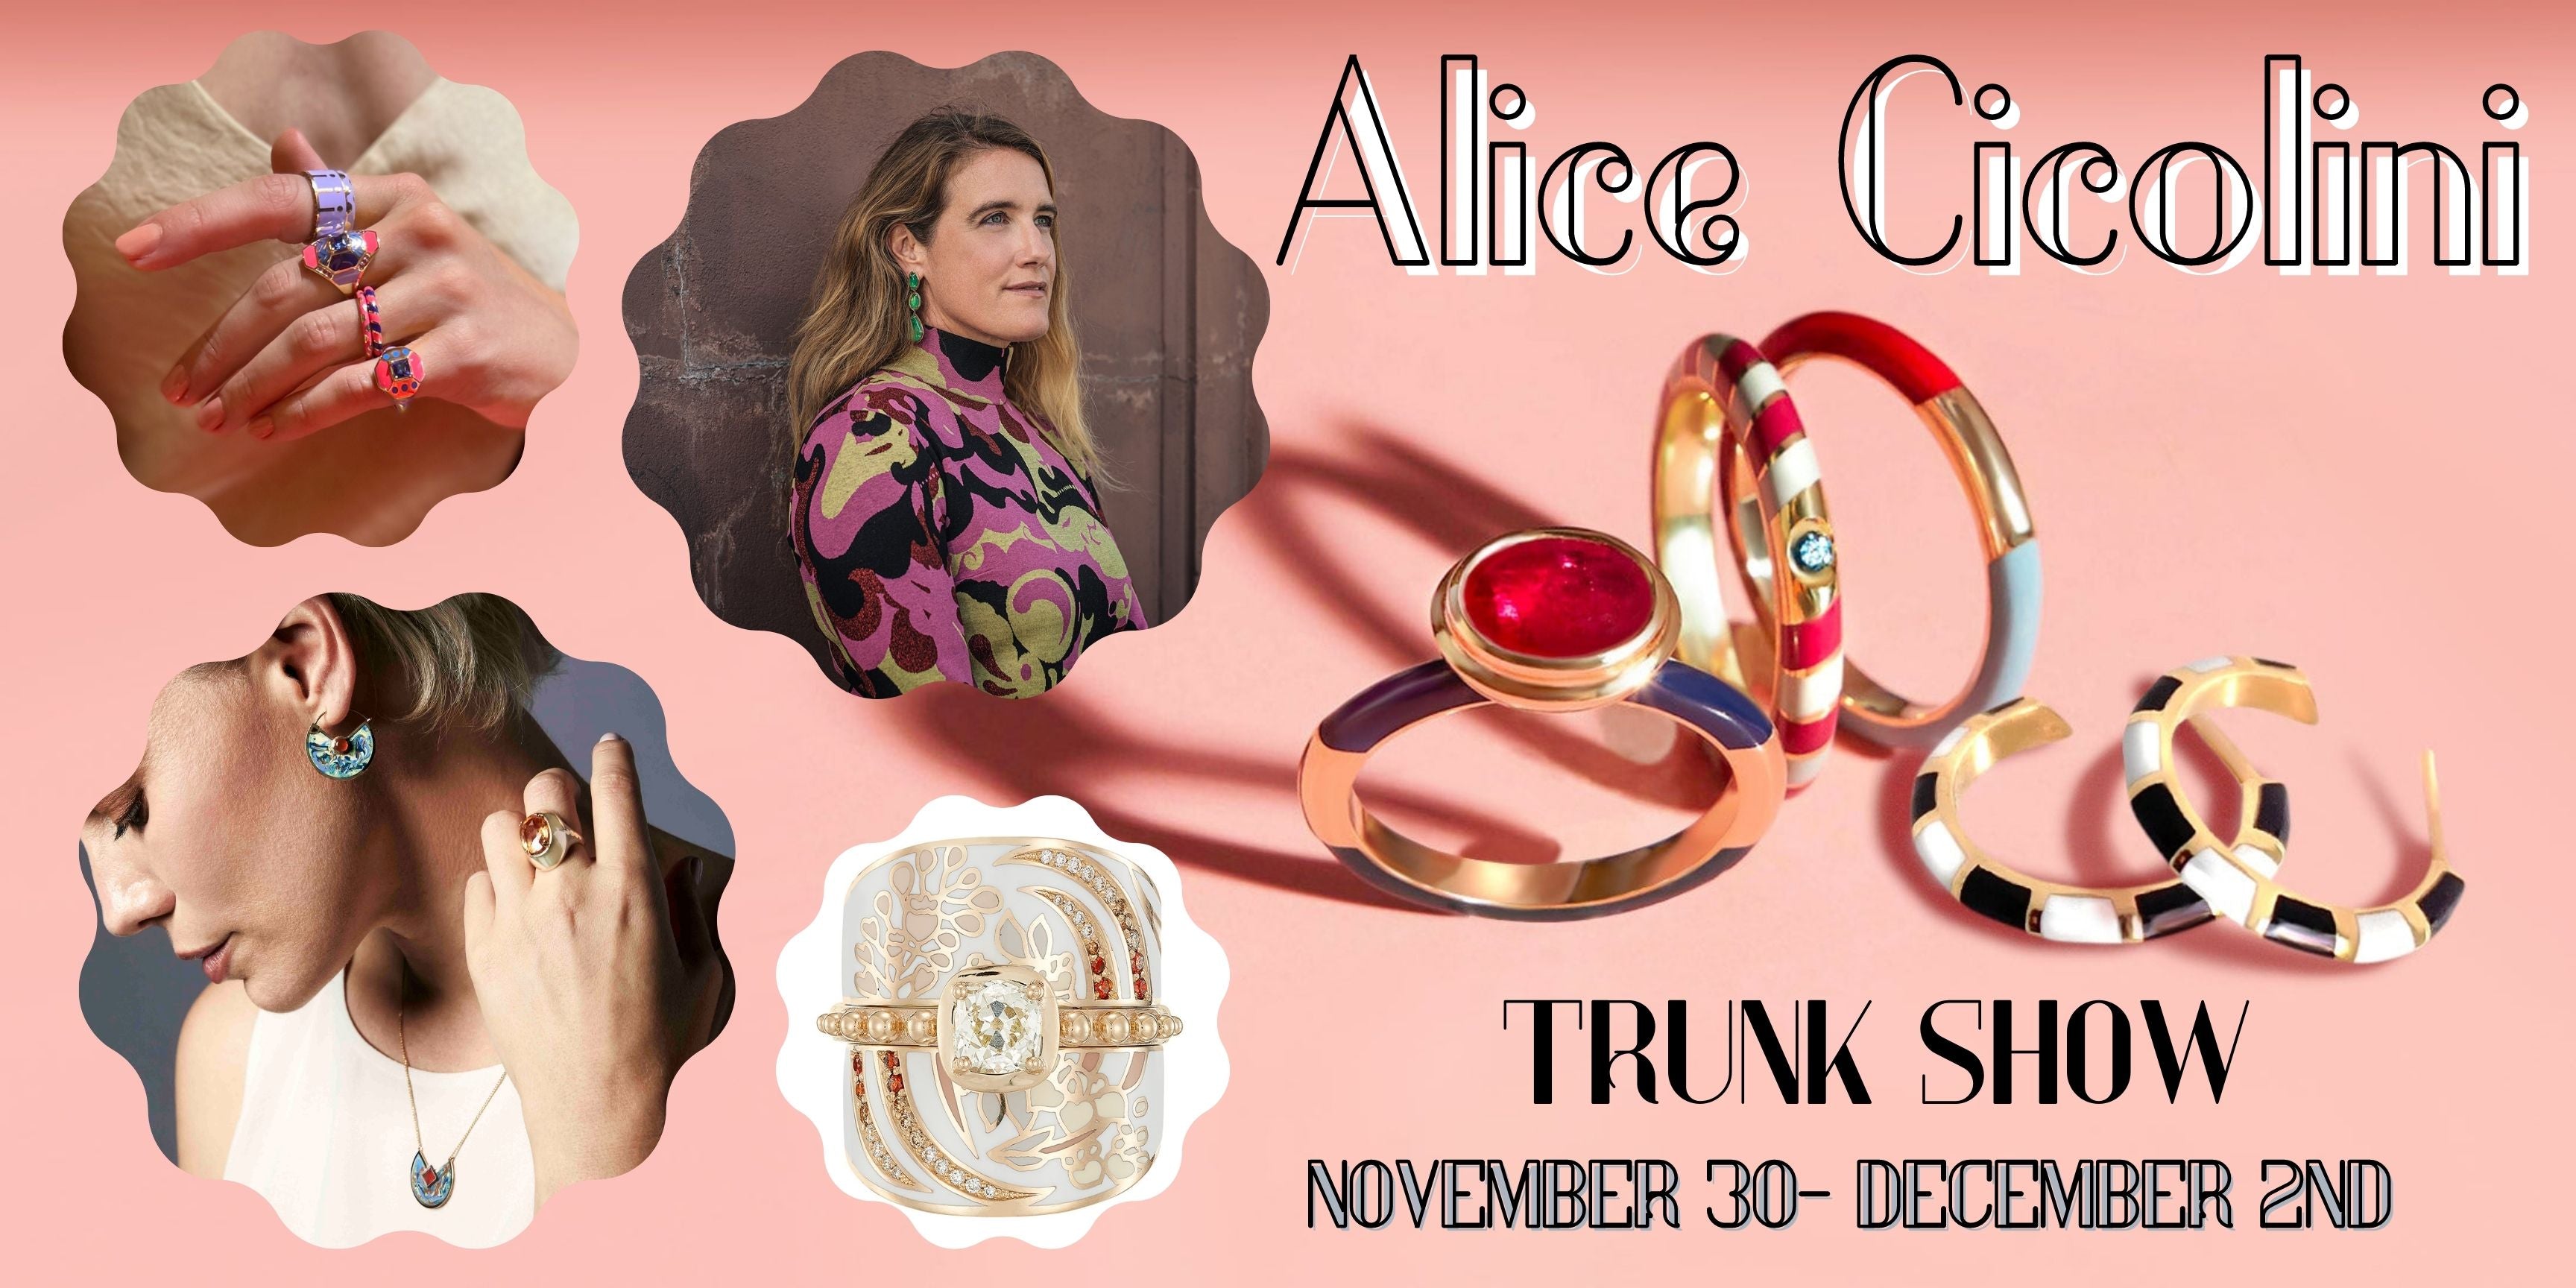 Alice Cicolini Trunk Show